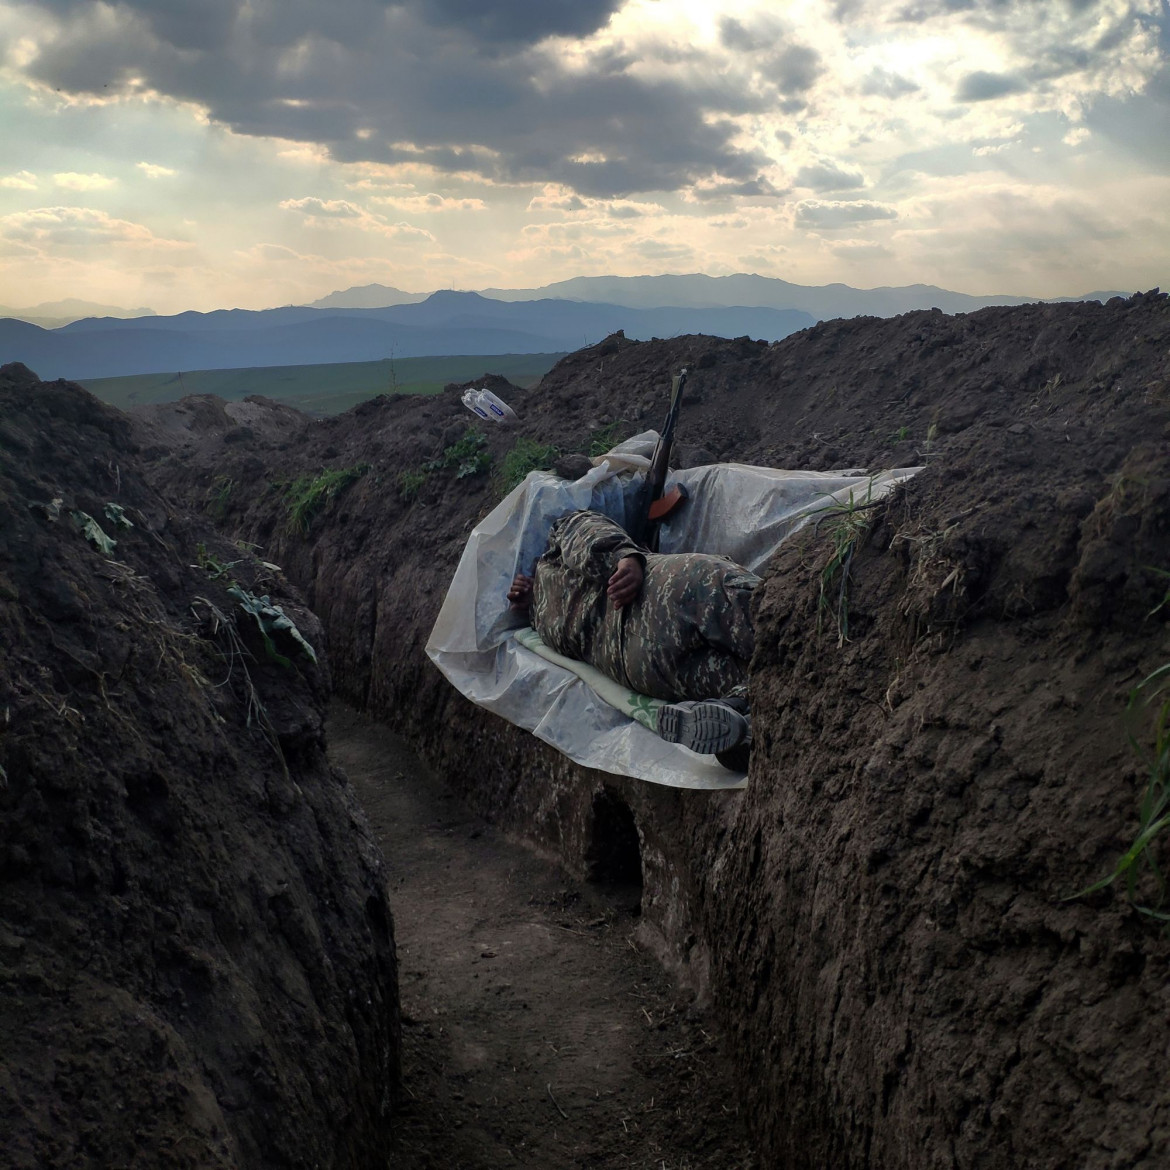 fot. Vaghinak Ghazaryan, Armenia, "Resting Soldier", 3 miejsce w kategorii "Contemporary issues - zdjęcie pojedyncze" / World Press Photo 2021<br></br><br></br>Żołnierz leży w rowie, wsparty na plastikowej osłonie, w północno-wschodniej części Syunikin, Armenia, 31 października 2020.<br></br><br></br>Druga wojna o Górski Karabach rozpoczęła się 27 września, a konflikt trwał do 9 listopada. Był to największy konflikt między Armenią a Azerbejdżanem o sporne terytorium od lat 90 XX wieku. Pierwsza wojna zakończyła się niełatwym zawieszeniem broni, w wyniku którego zwycięscy Ormianie jednostronnie ogłosili niepodległość i wypędzili około 800 000 Azerów na wygnanie.<br></br><br></br>W ciągu ostatnich 30 lat niewiele zrobiono, aby rozwiązać kwestię Górskiego Karabachu, który nadal był uznawany na arenie międzynarodowej za należący do Azerbejdżanu, a między obiema stronami dochodziło do okresowych starć zbrojnych, które w 2020 r. przerodziły się w wojnę.<br></br><br></br>Dzięki Rosji w listopadzie Azerbejdżan odzyskał terytorium utracone w latach 90., ale stolica regionu Stepanakert pozostała pod kontrolą Armenii. Armia armeńska stopniowo wycofywała się z regionu Górskiego Karabachu, by zastąpić ją rosyjskimi siłami pokojowymi, które będą tam rozmieszczone do 2025 roku.